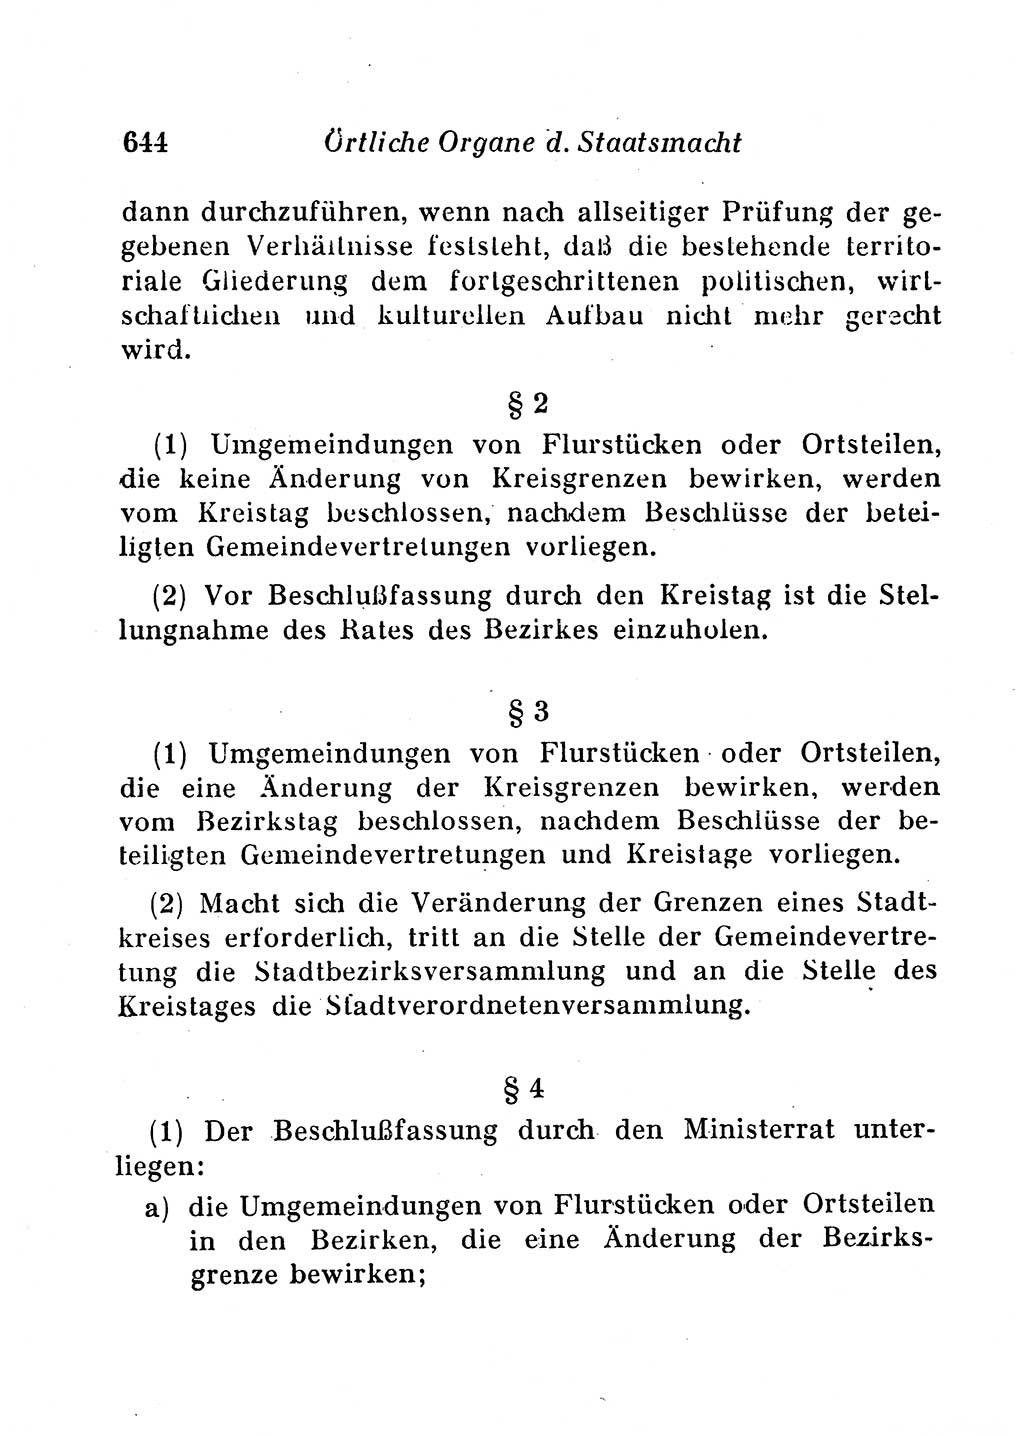 Staats- und verwaltungsrechtliche Gesetze der Deutschen Demokratischen Republik (DDR) 1958, Seite 644 (StVerwR Ges. DDR 1958, S. 644)